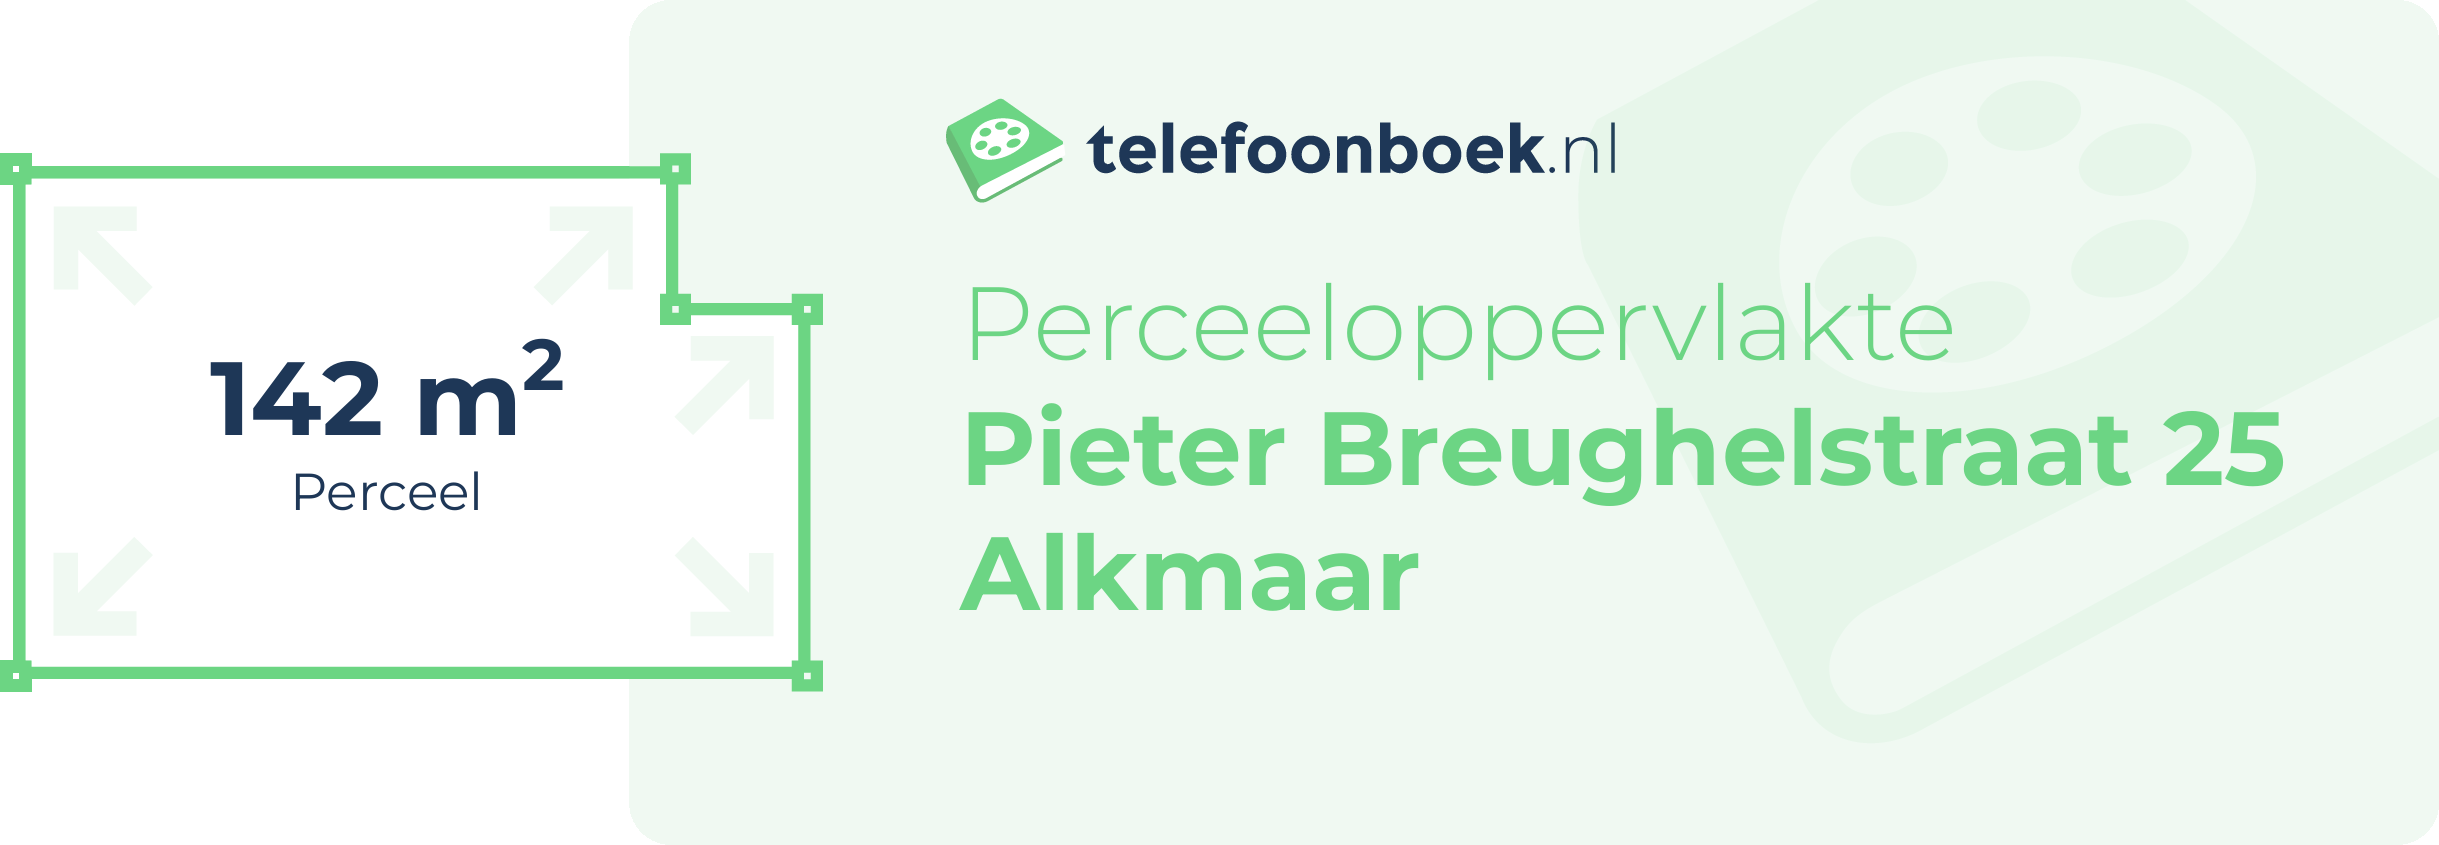 Perceeloppervlakte Pieter Breughelstraat 25 Alkmaar